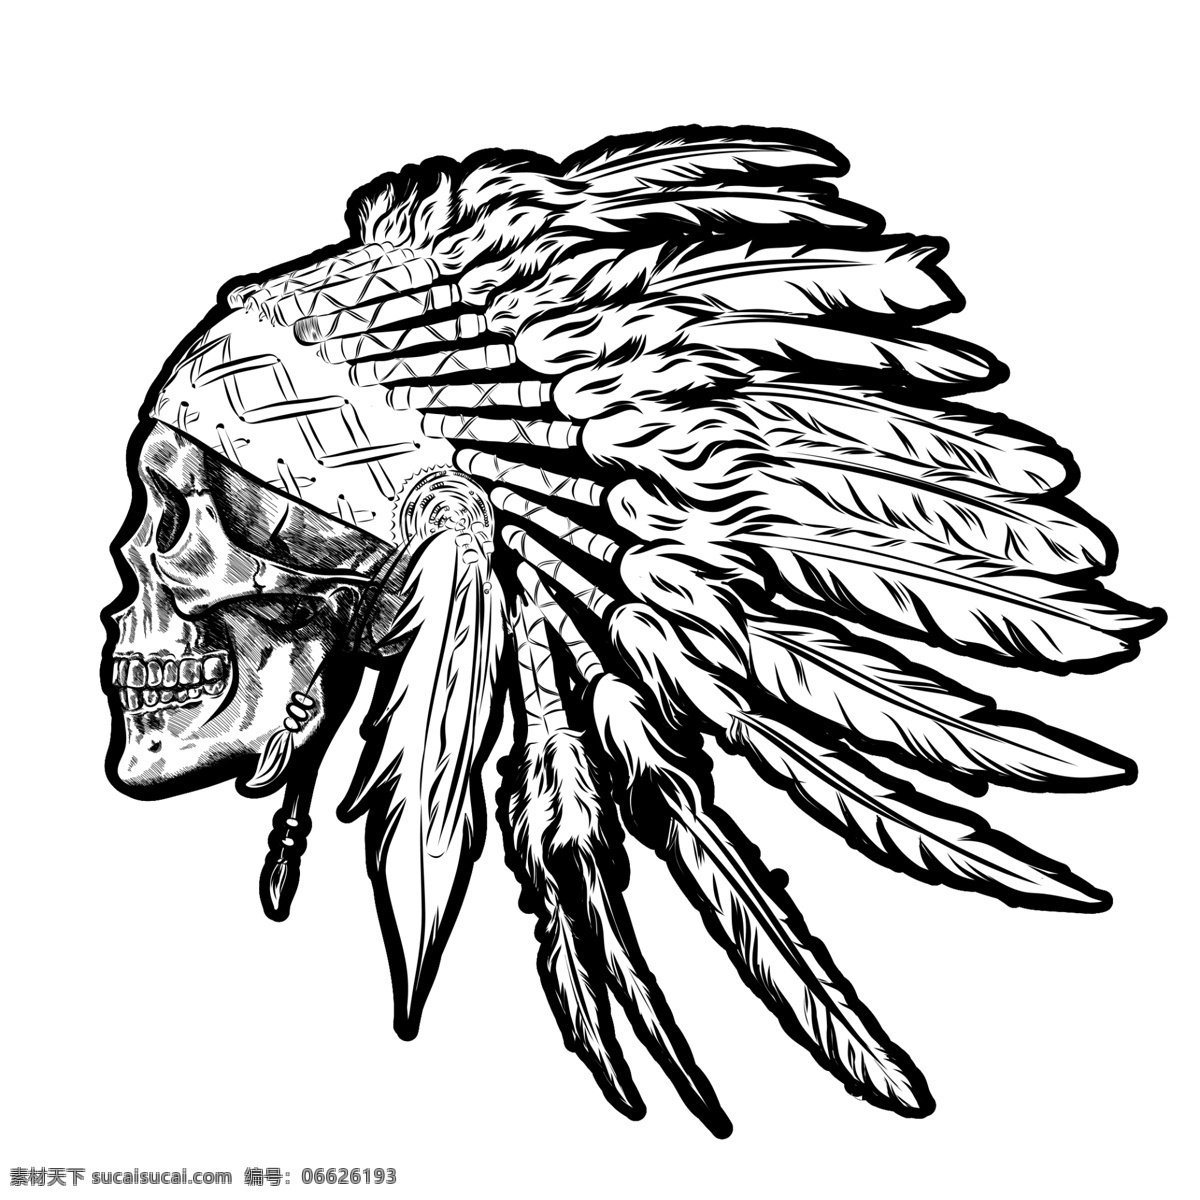 印第安 骷髅 头 羽毛 彩色 酋长图片 头羽毛 酋长 分层